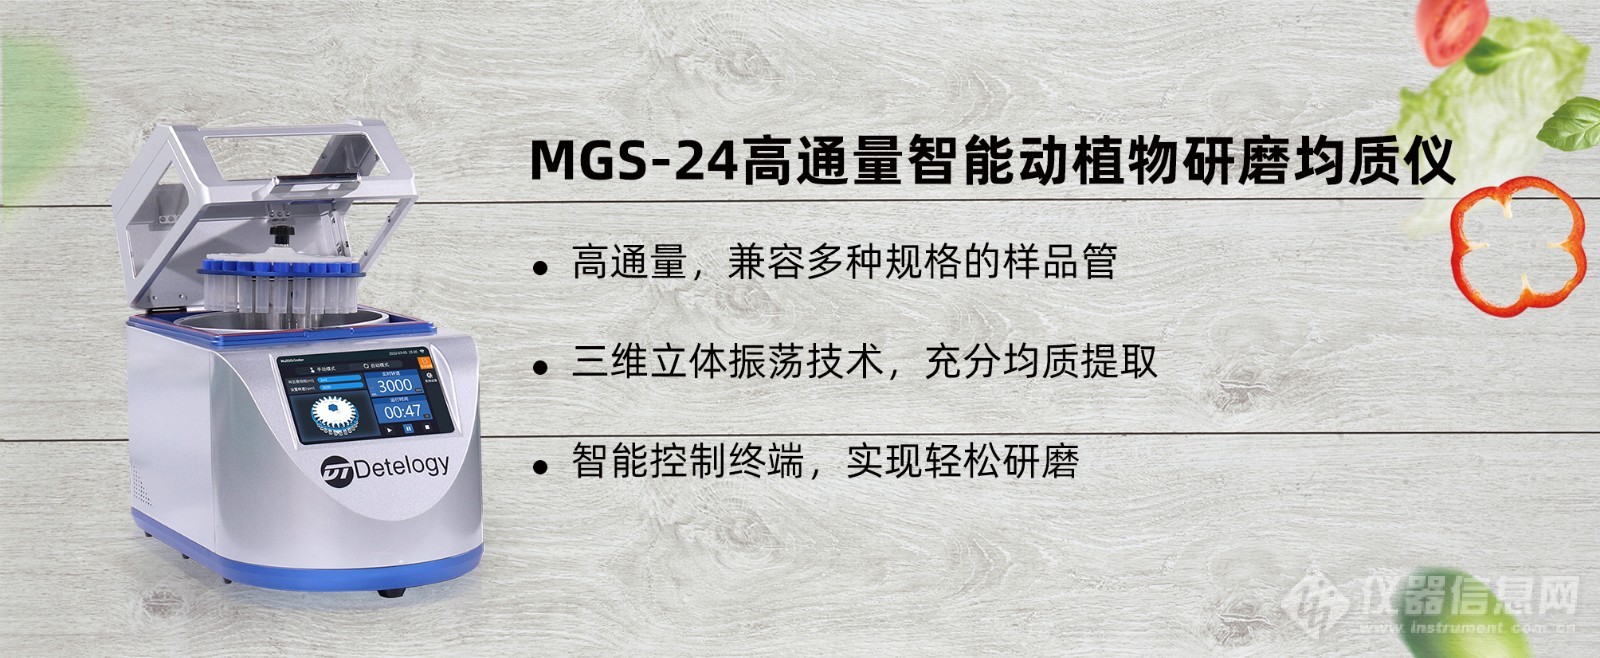 MGS-24高通量智能动植物研磨均质仪.jpg